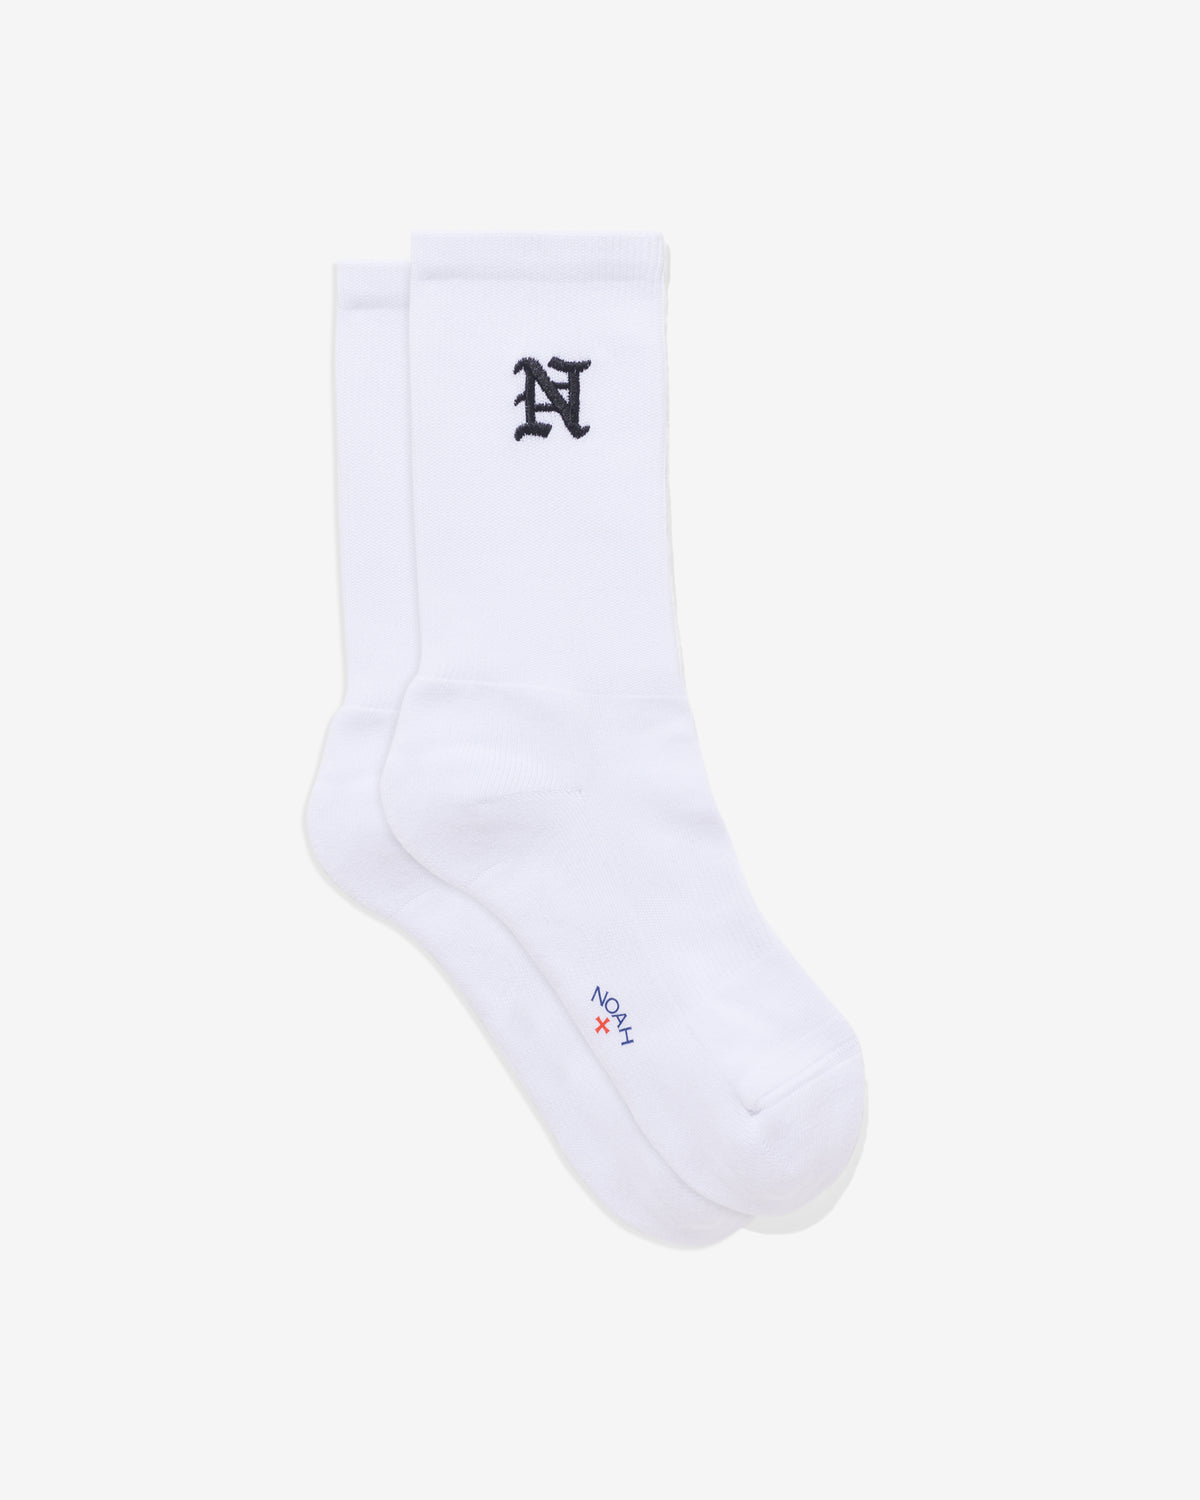 N Logo Sock - Noah